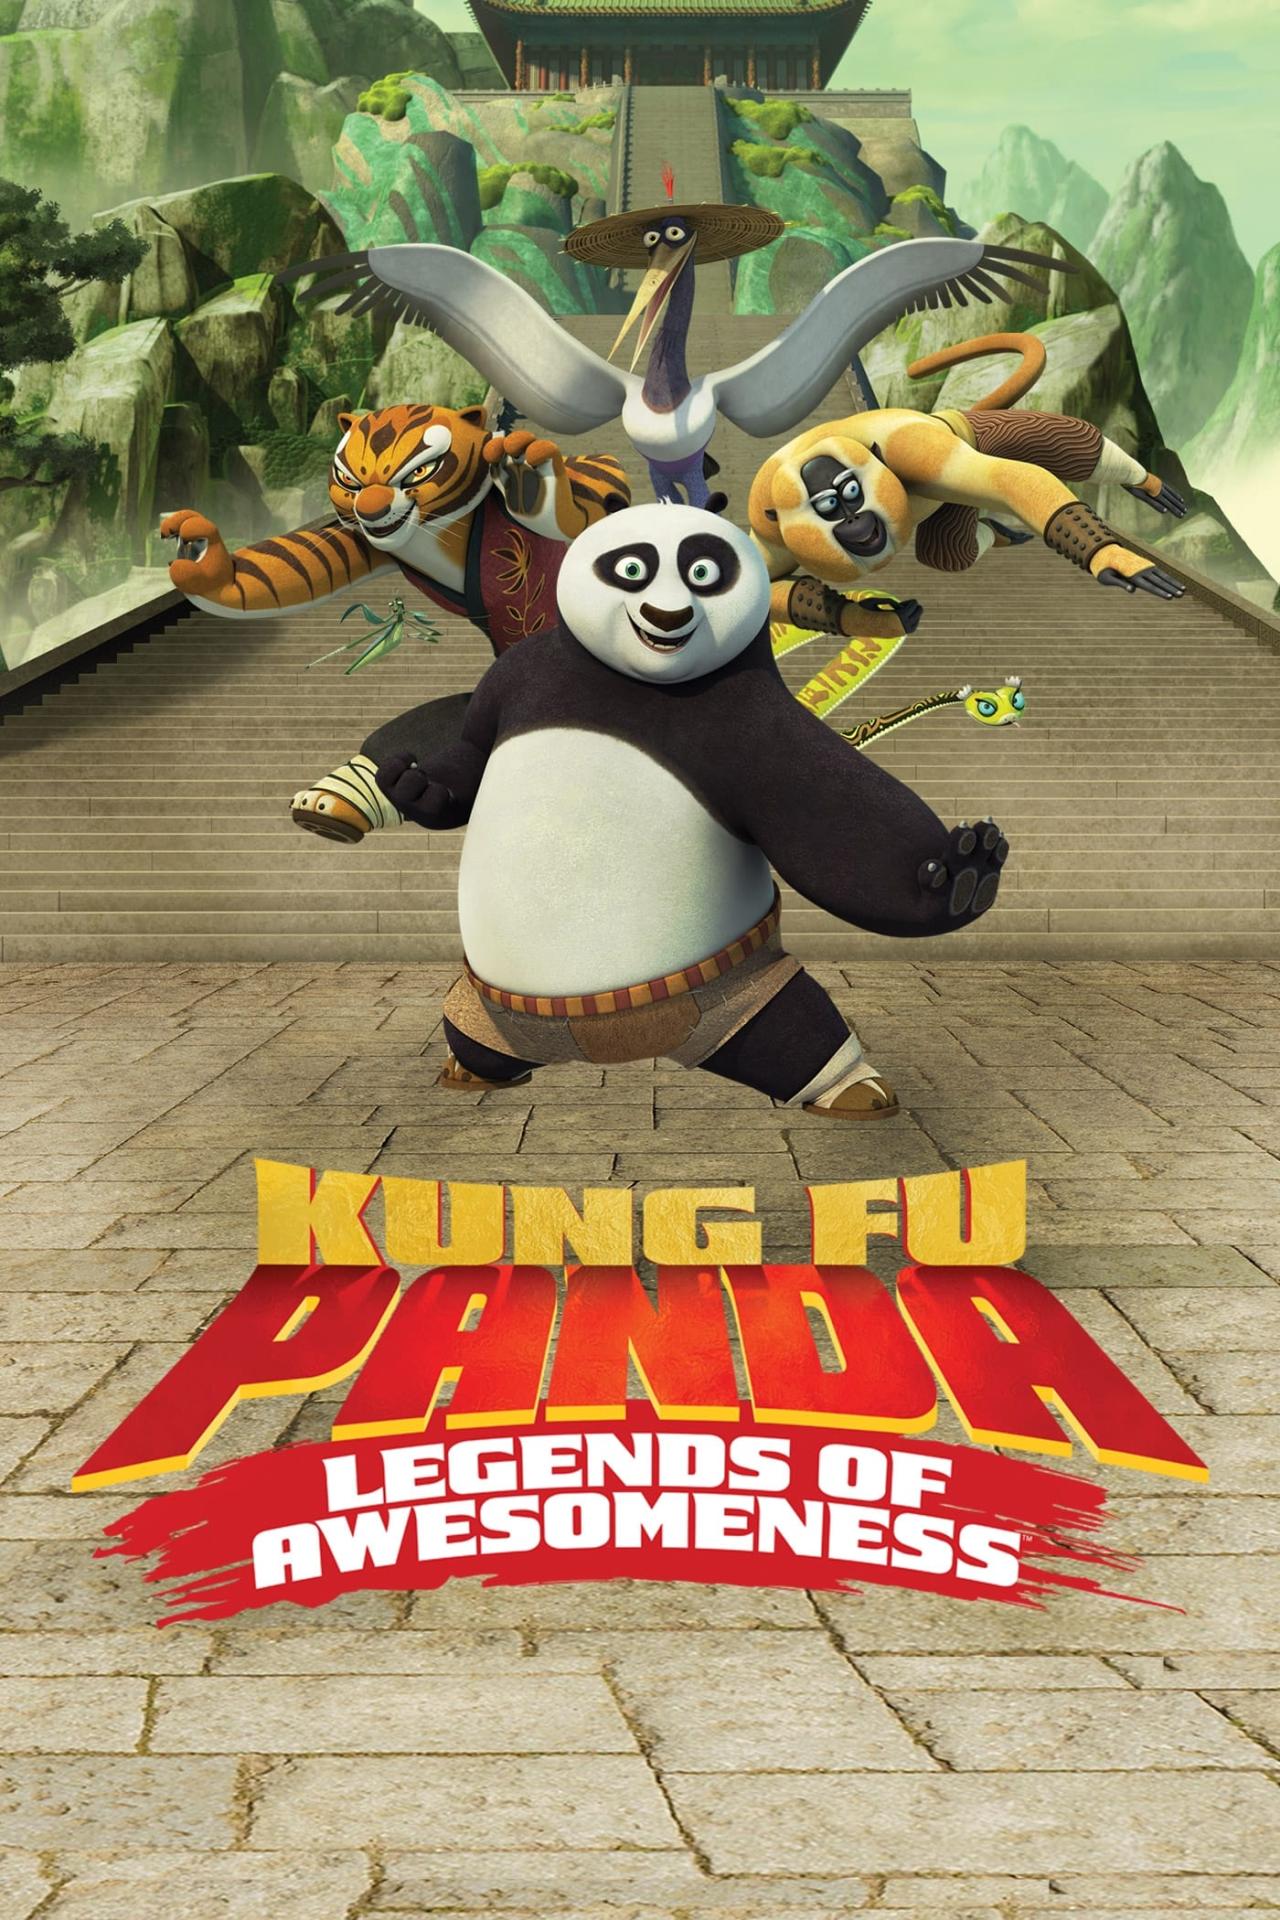 Affiche de la série Kung Fu Panda : L'Incroyable Légende poster